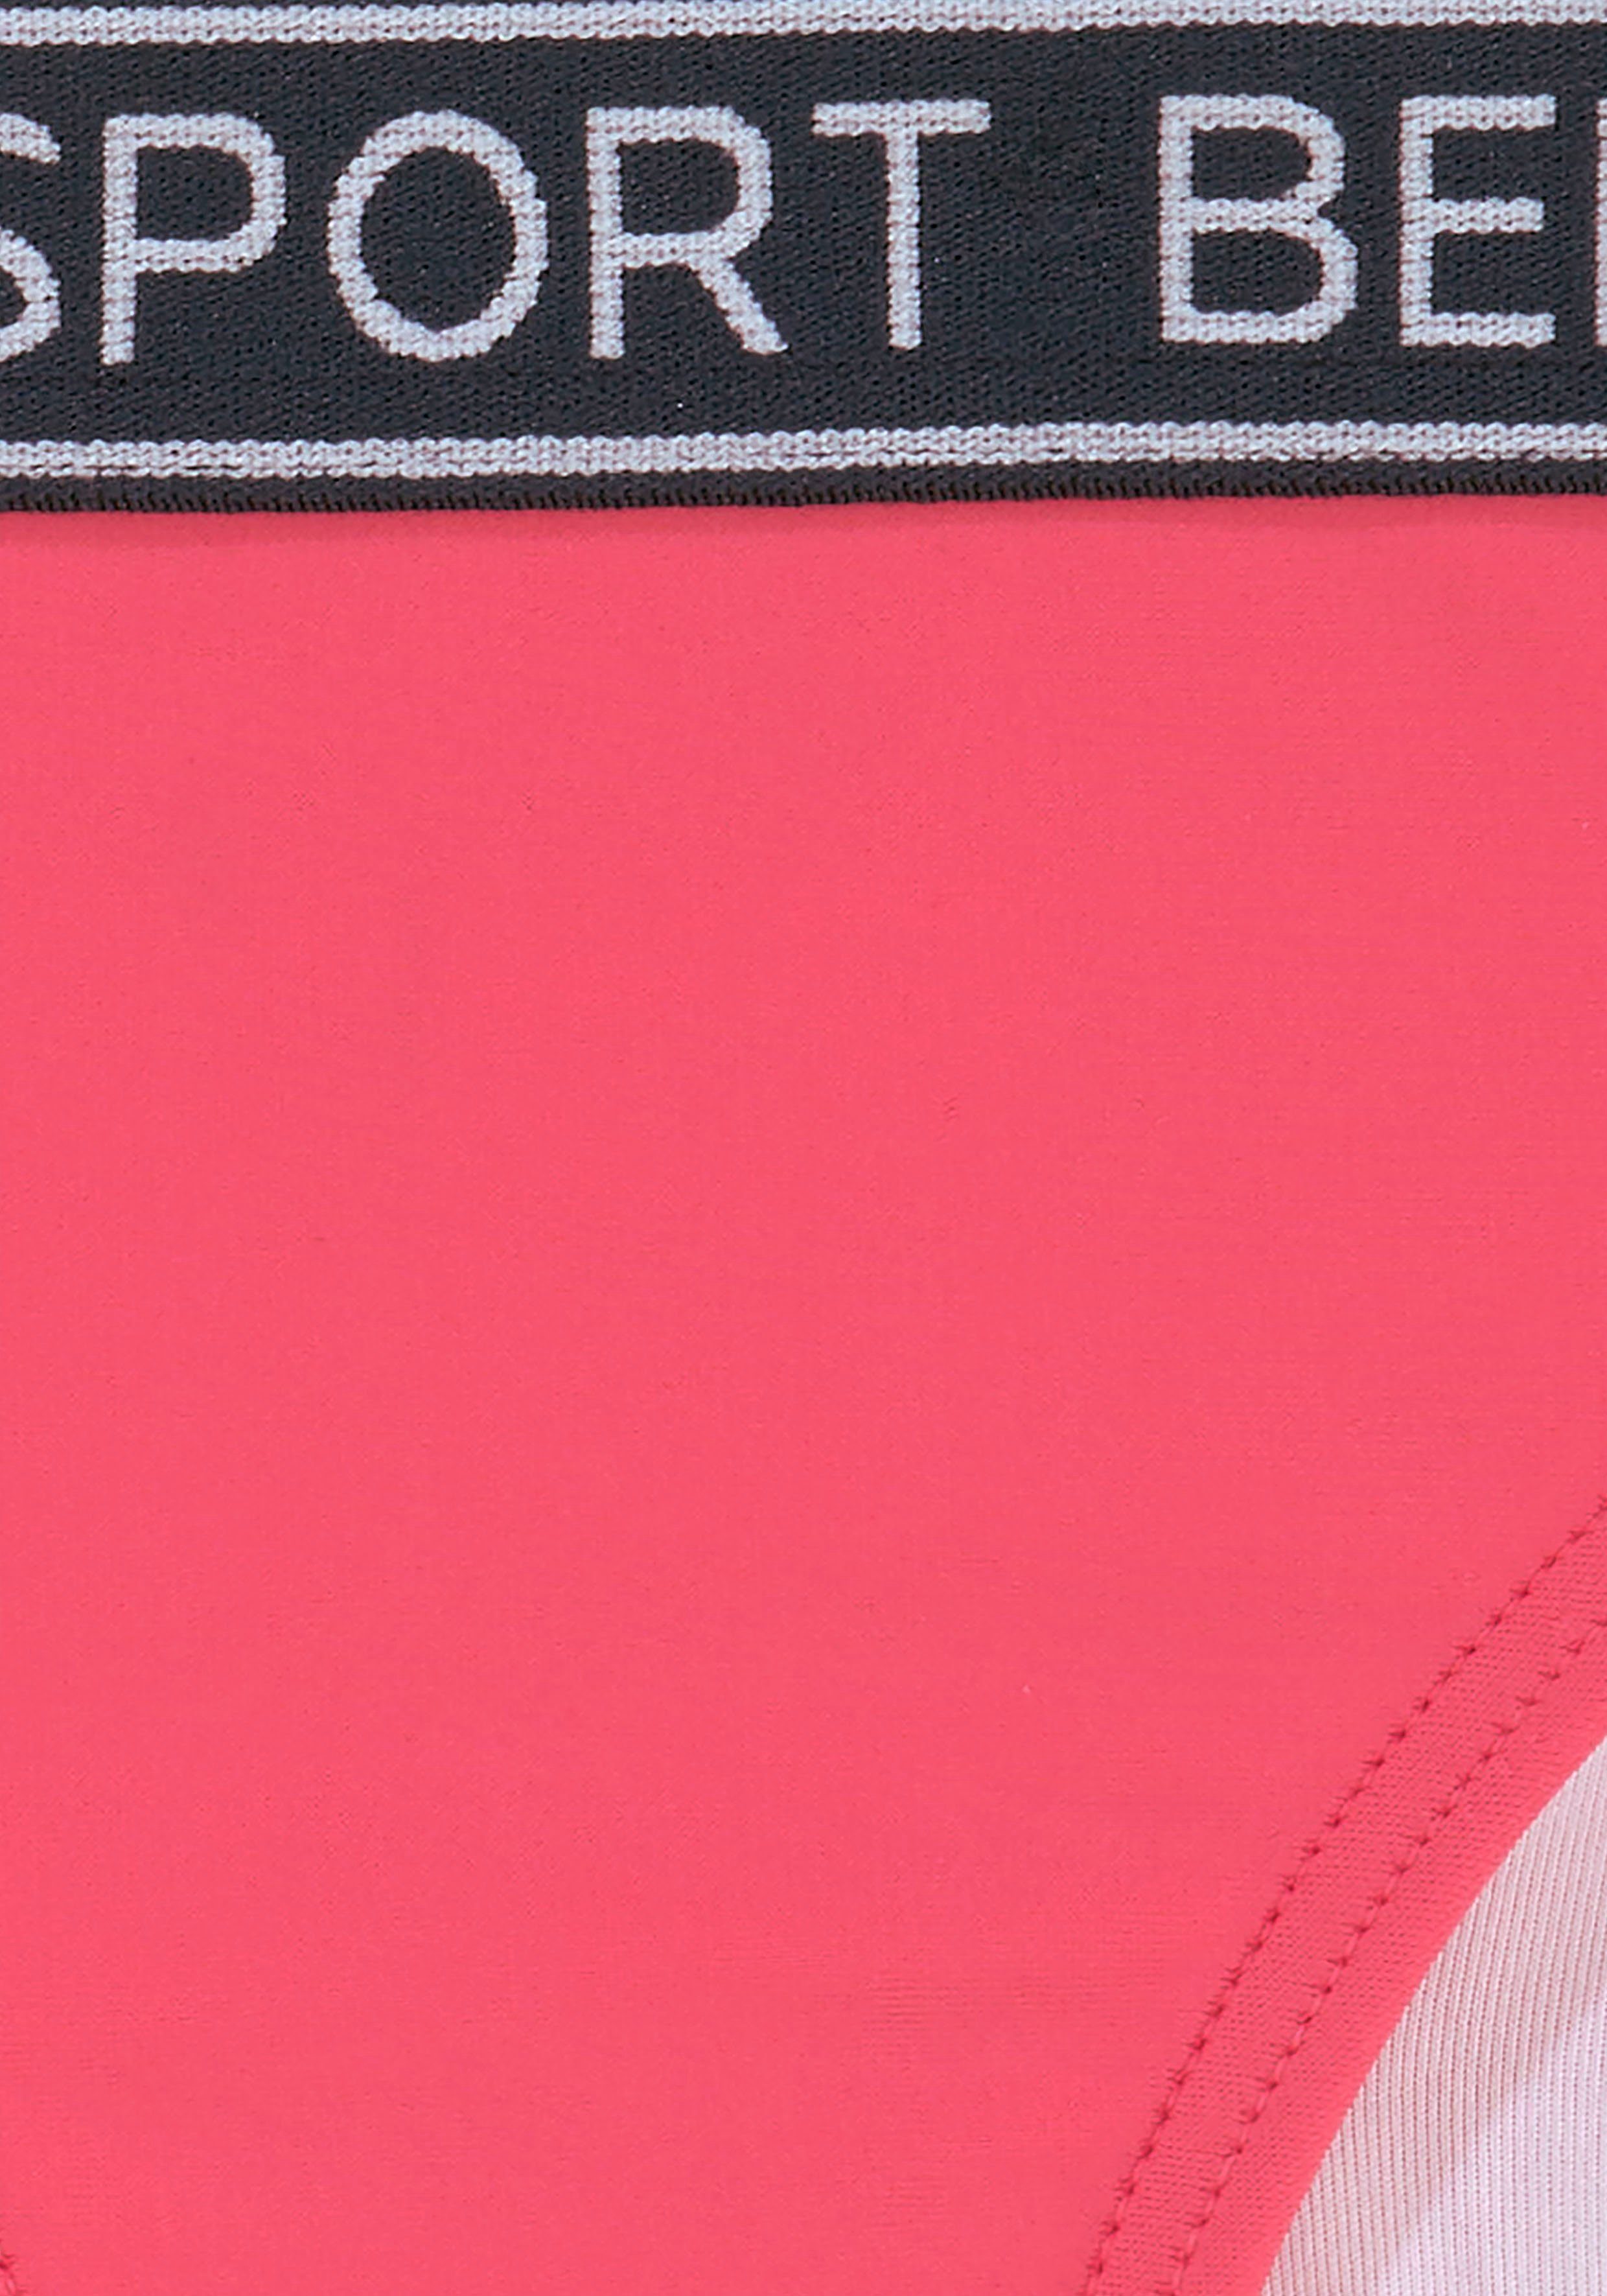 Triangel-Bikini sportlichem pink Kids Bench. in und Design Farben Yva